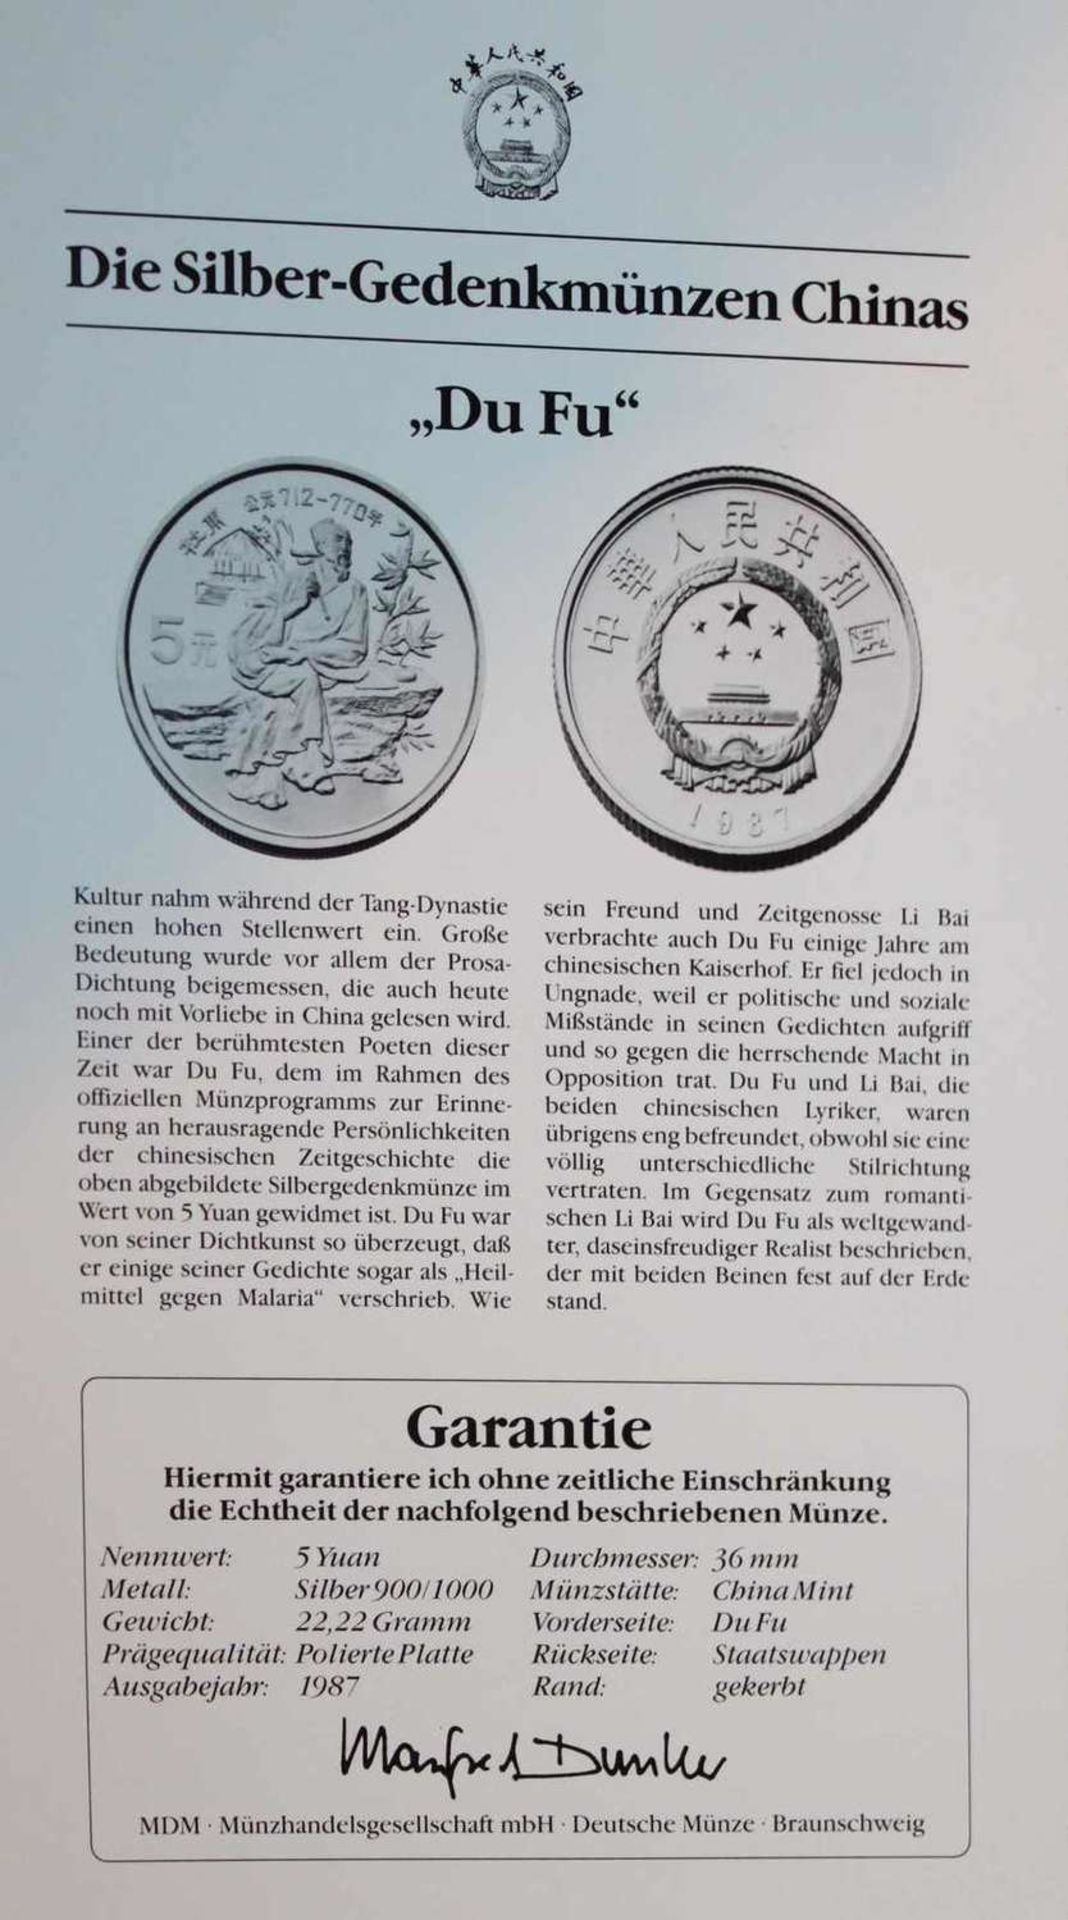 China 1987, 5 Yuan - Silbermünze "Du Fu". Silber 900. Gewicht: 22,2 gr.. In Kapsel. Erhaltung: PP. - Bild 3 aus 3